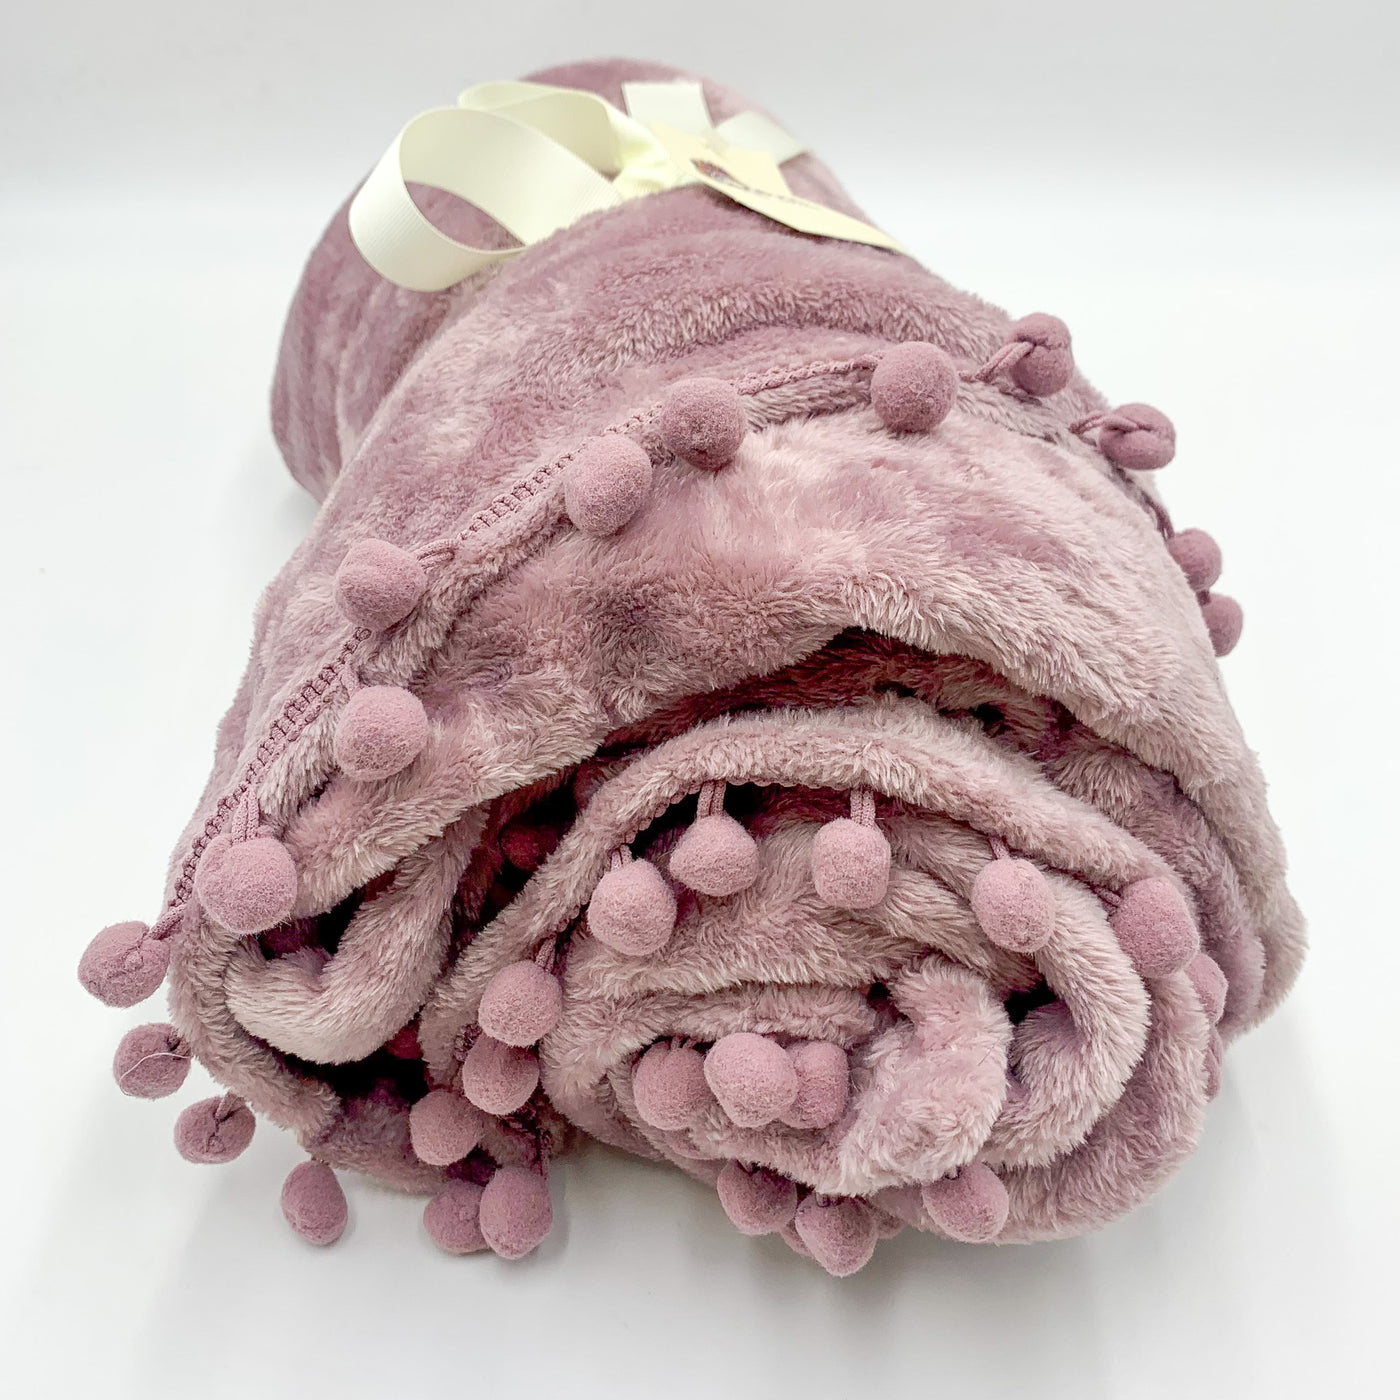 Textil Mantas y plaids Fibras sintéticas Rosa